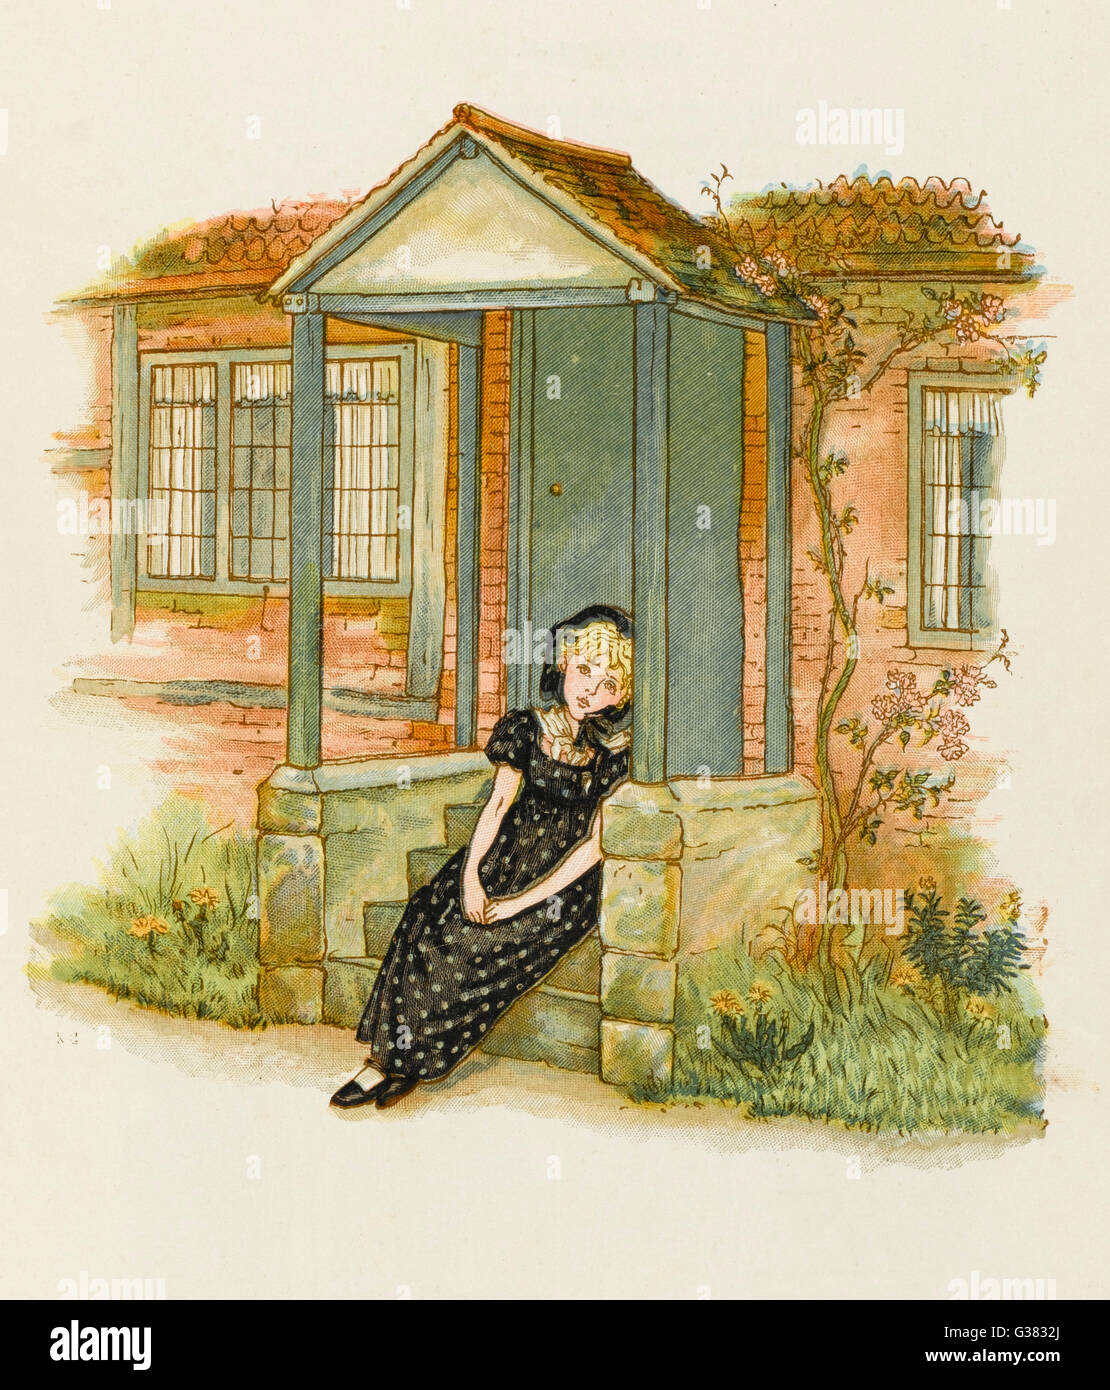 Una niña huérfana, vestida de negro y mirando muy solitaria y triste. Fecha: 1883 Foto de stock